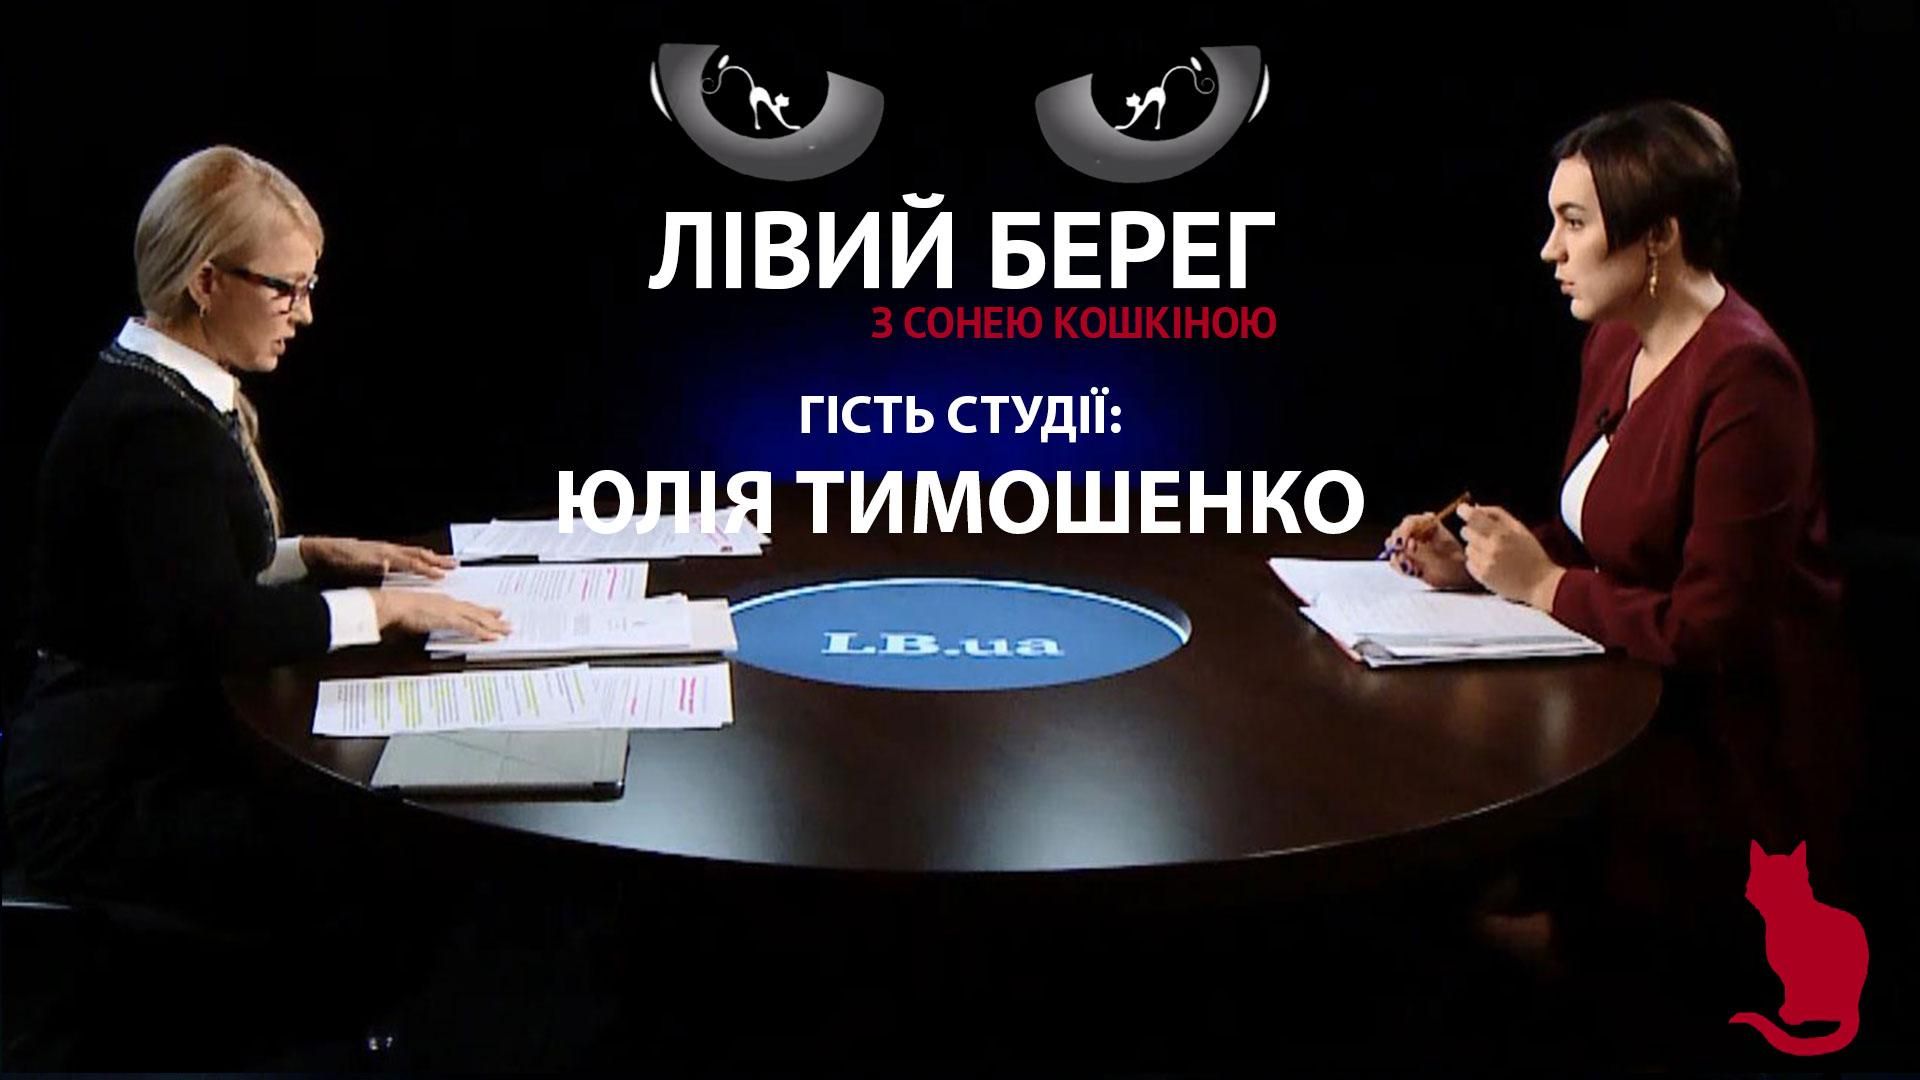 Порошенко сегодня наибольший олигарх в стране, – Тимошенко